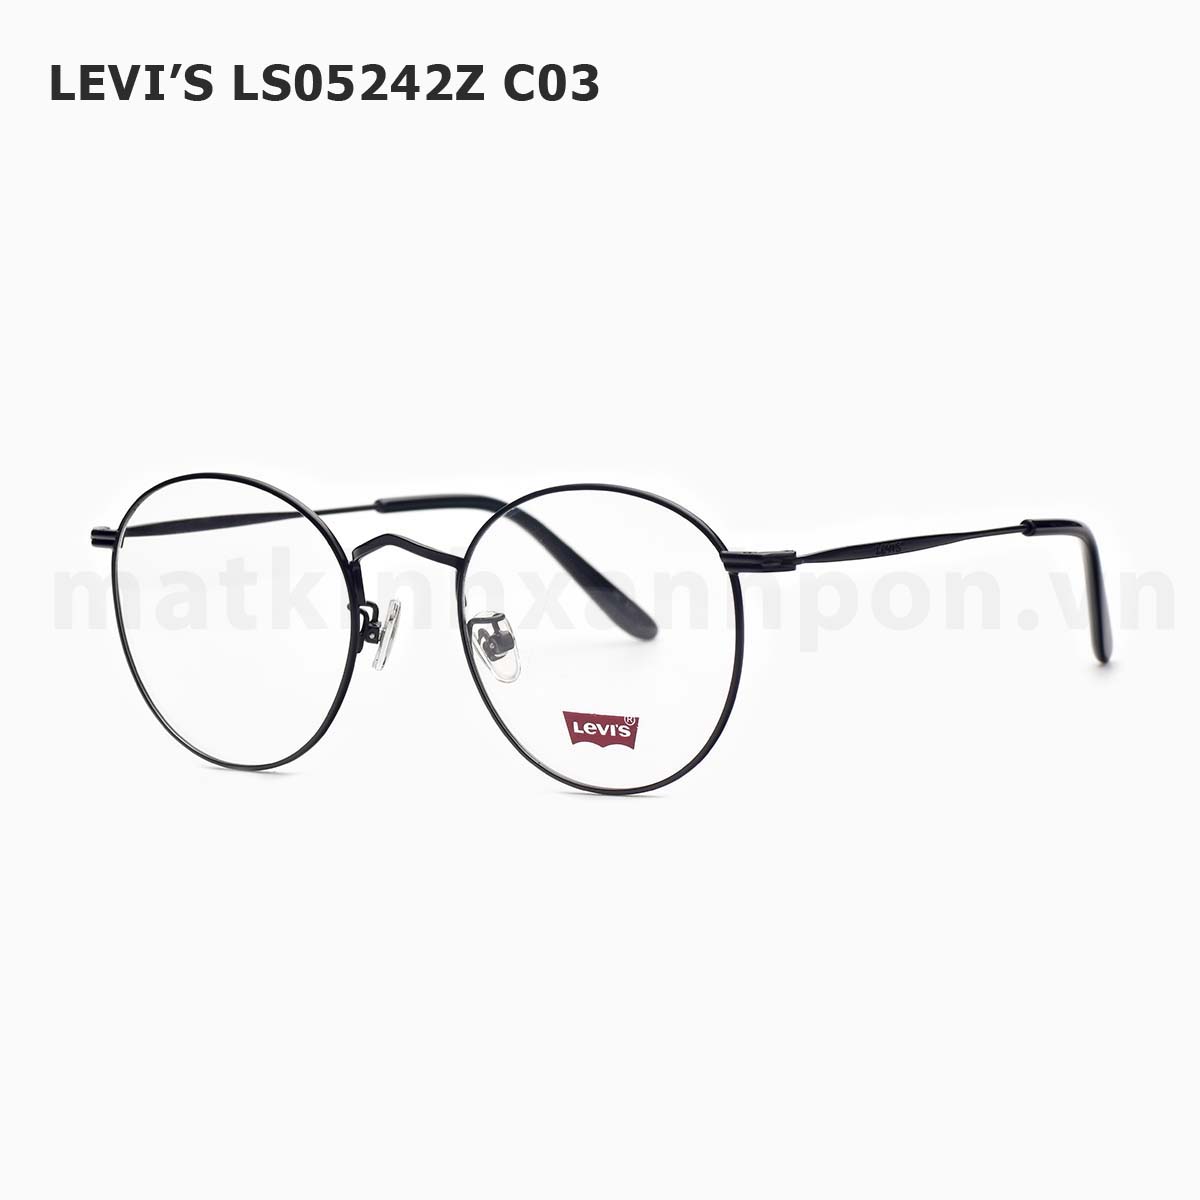 Levi’s LS05242Z C03